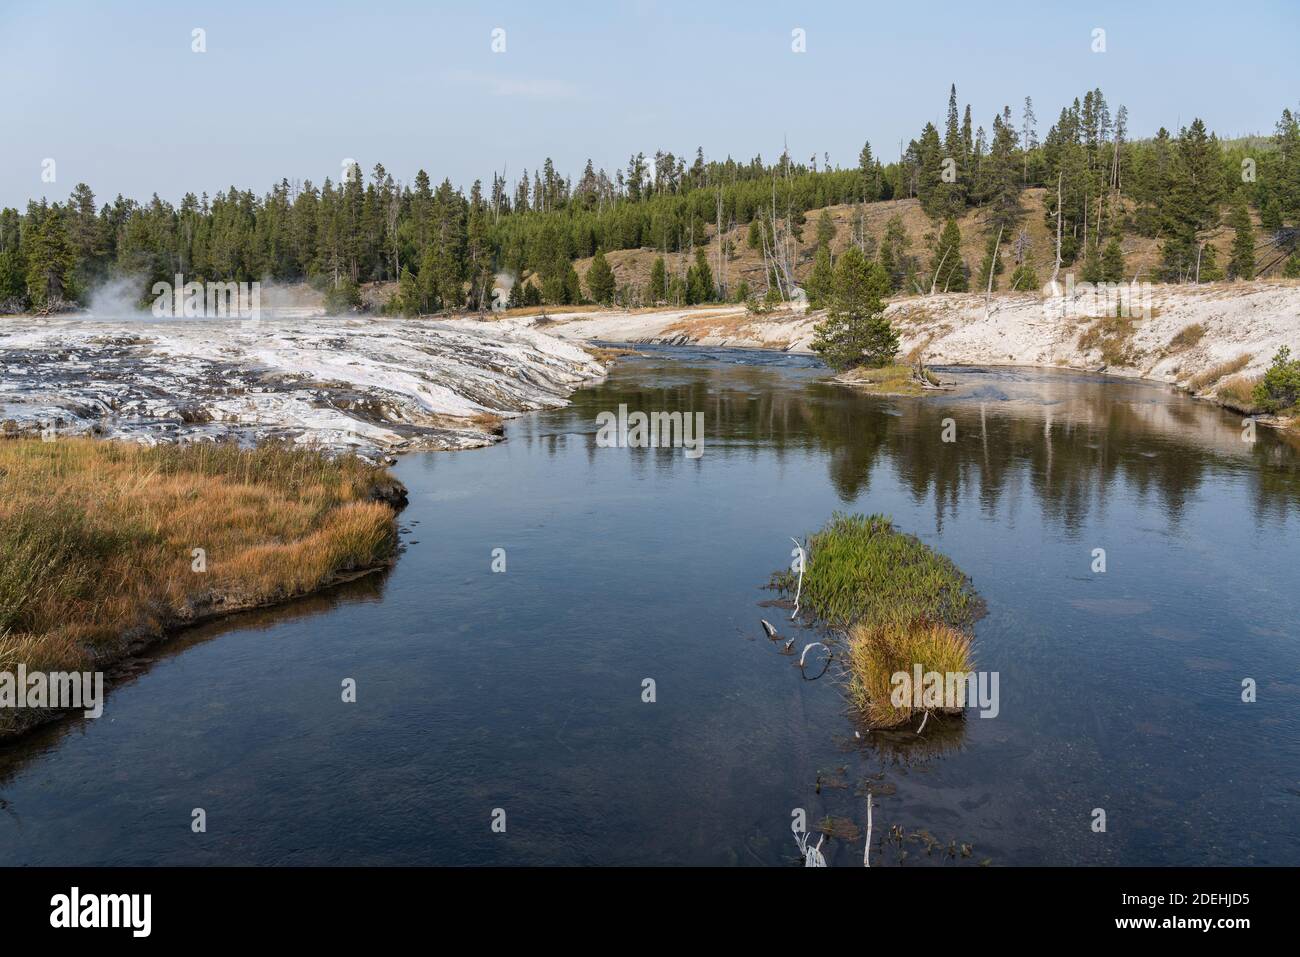 Los depósitos minerales de Geyserite de aguas termales y géiseres bordean las orillas del río Firehole en el Parque Nacional de Yellowstone, Wyoming, EE.UU. Foto de stock